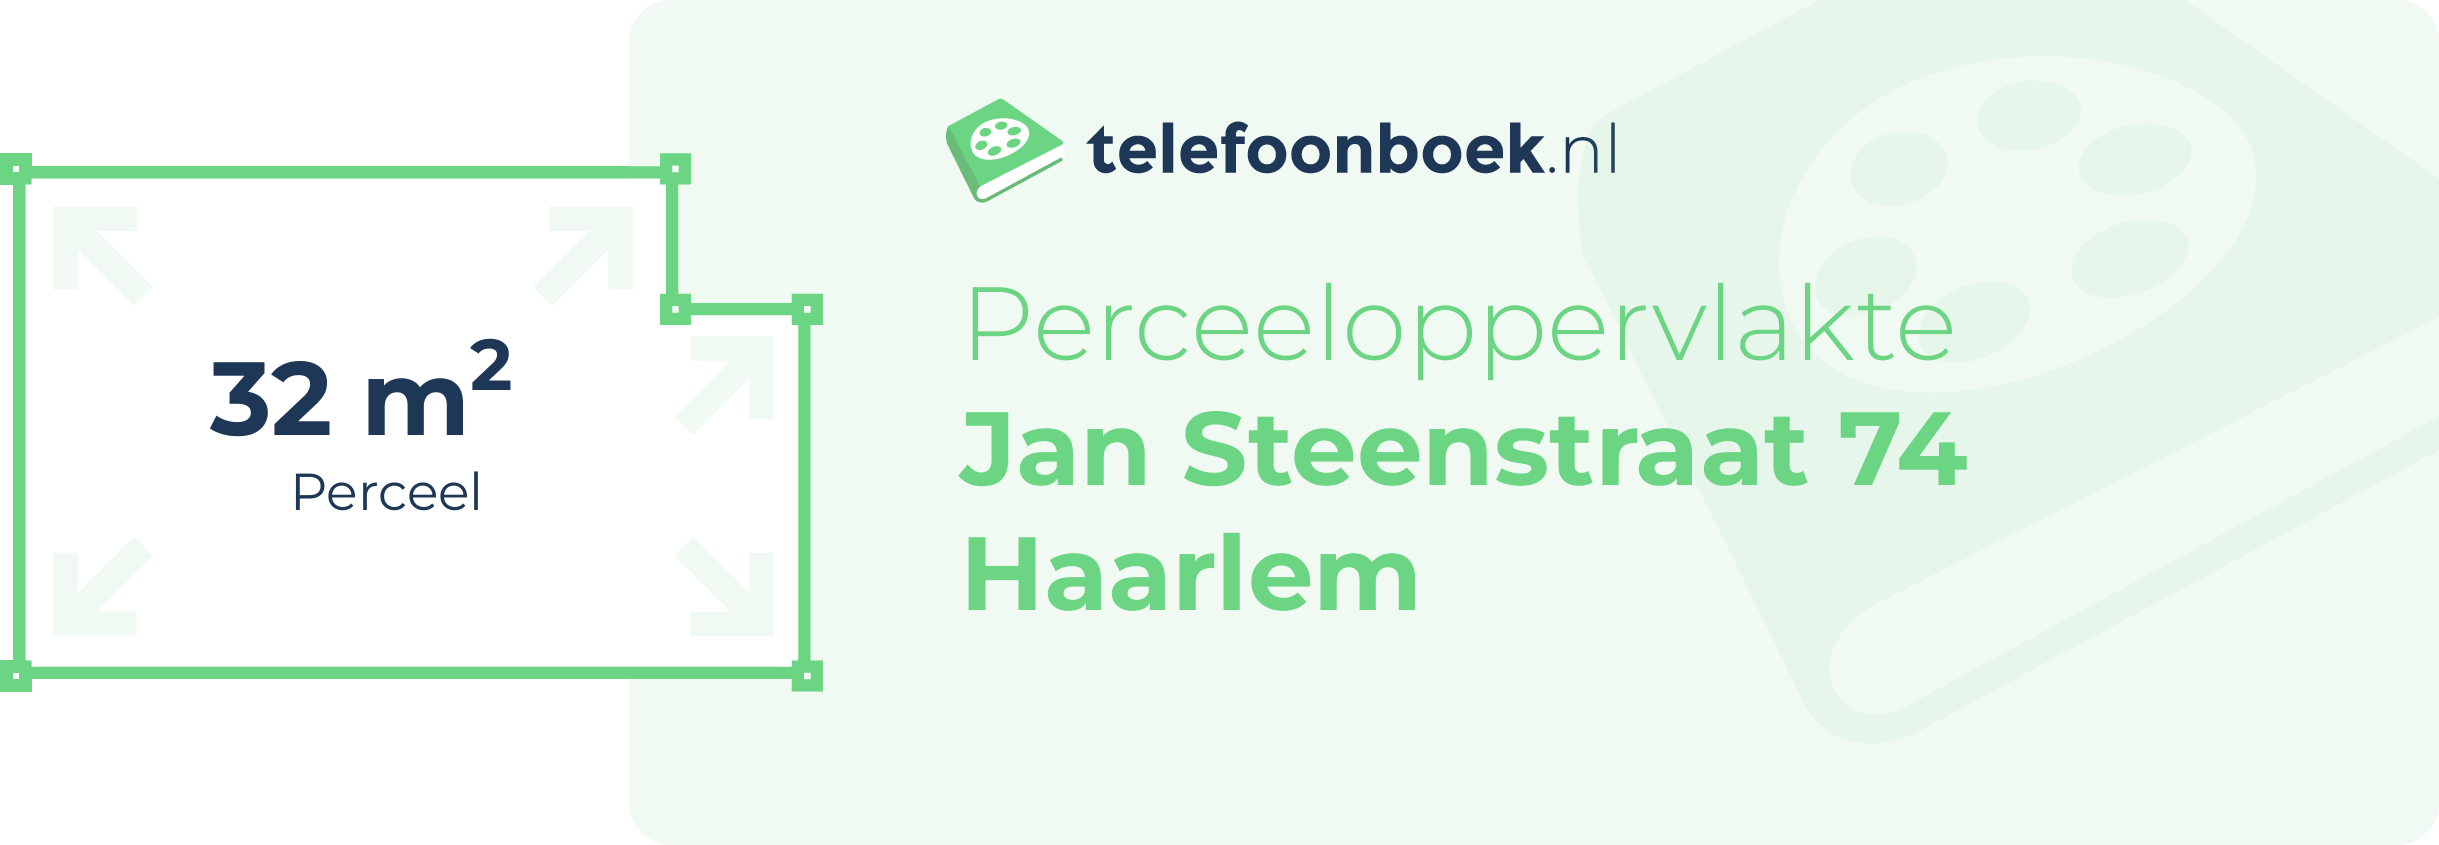 Perceeloppervlakte Jan Steenstraat 74 Haarlem